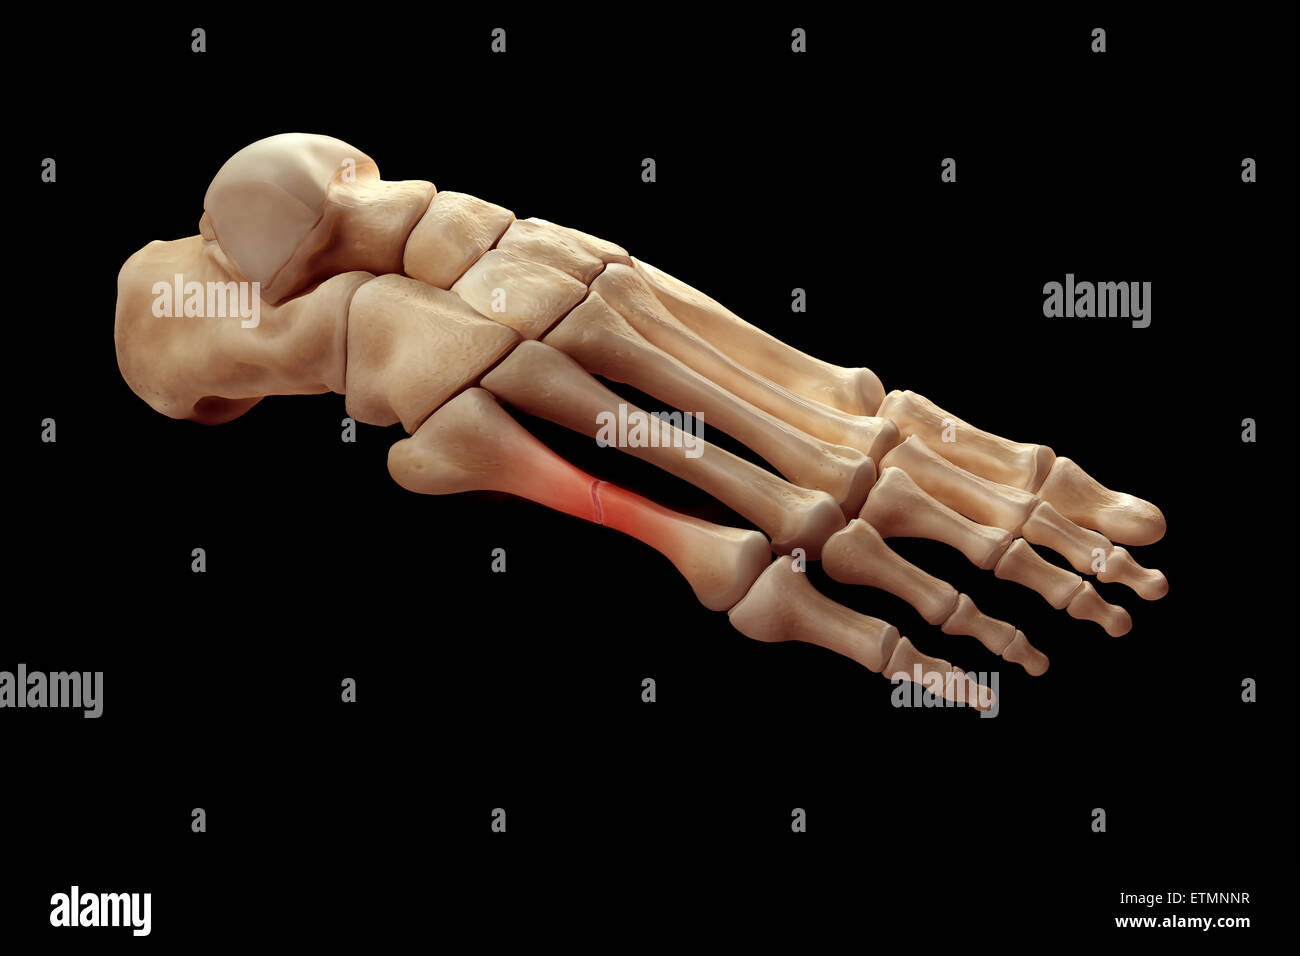 Ilustración que muestra los huesos del pie con una rotura en un metatarsiano resaltada. Foto de stock